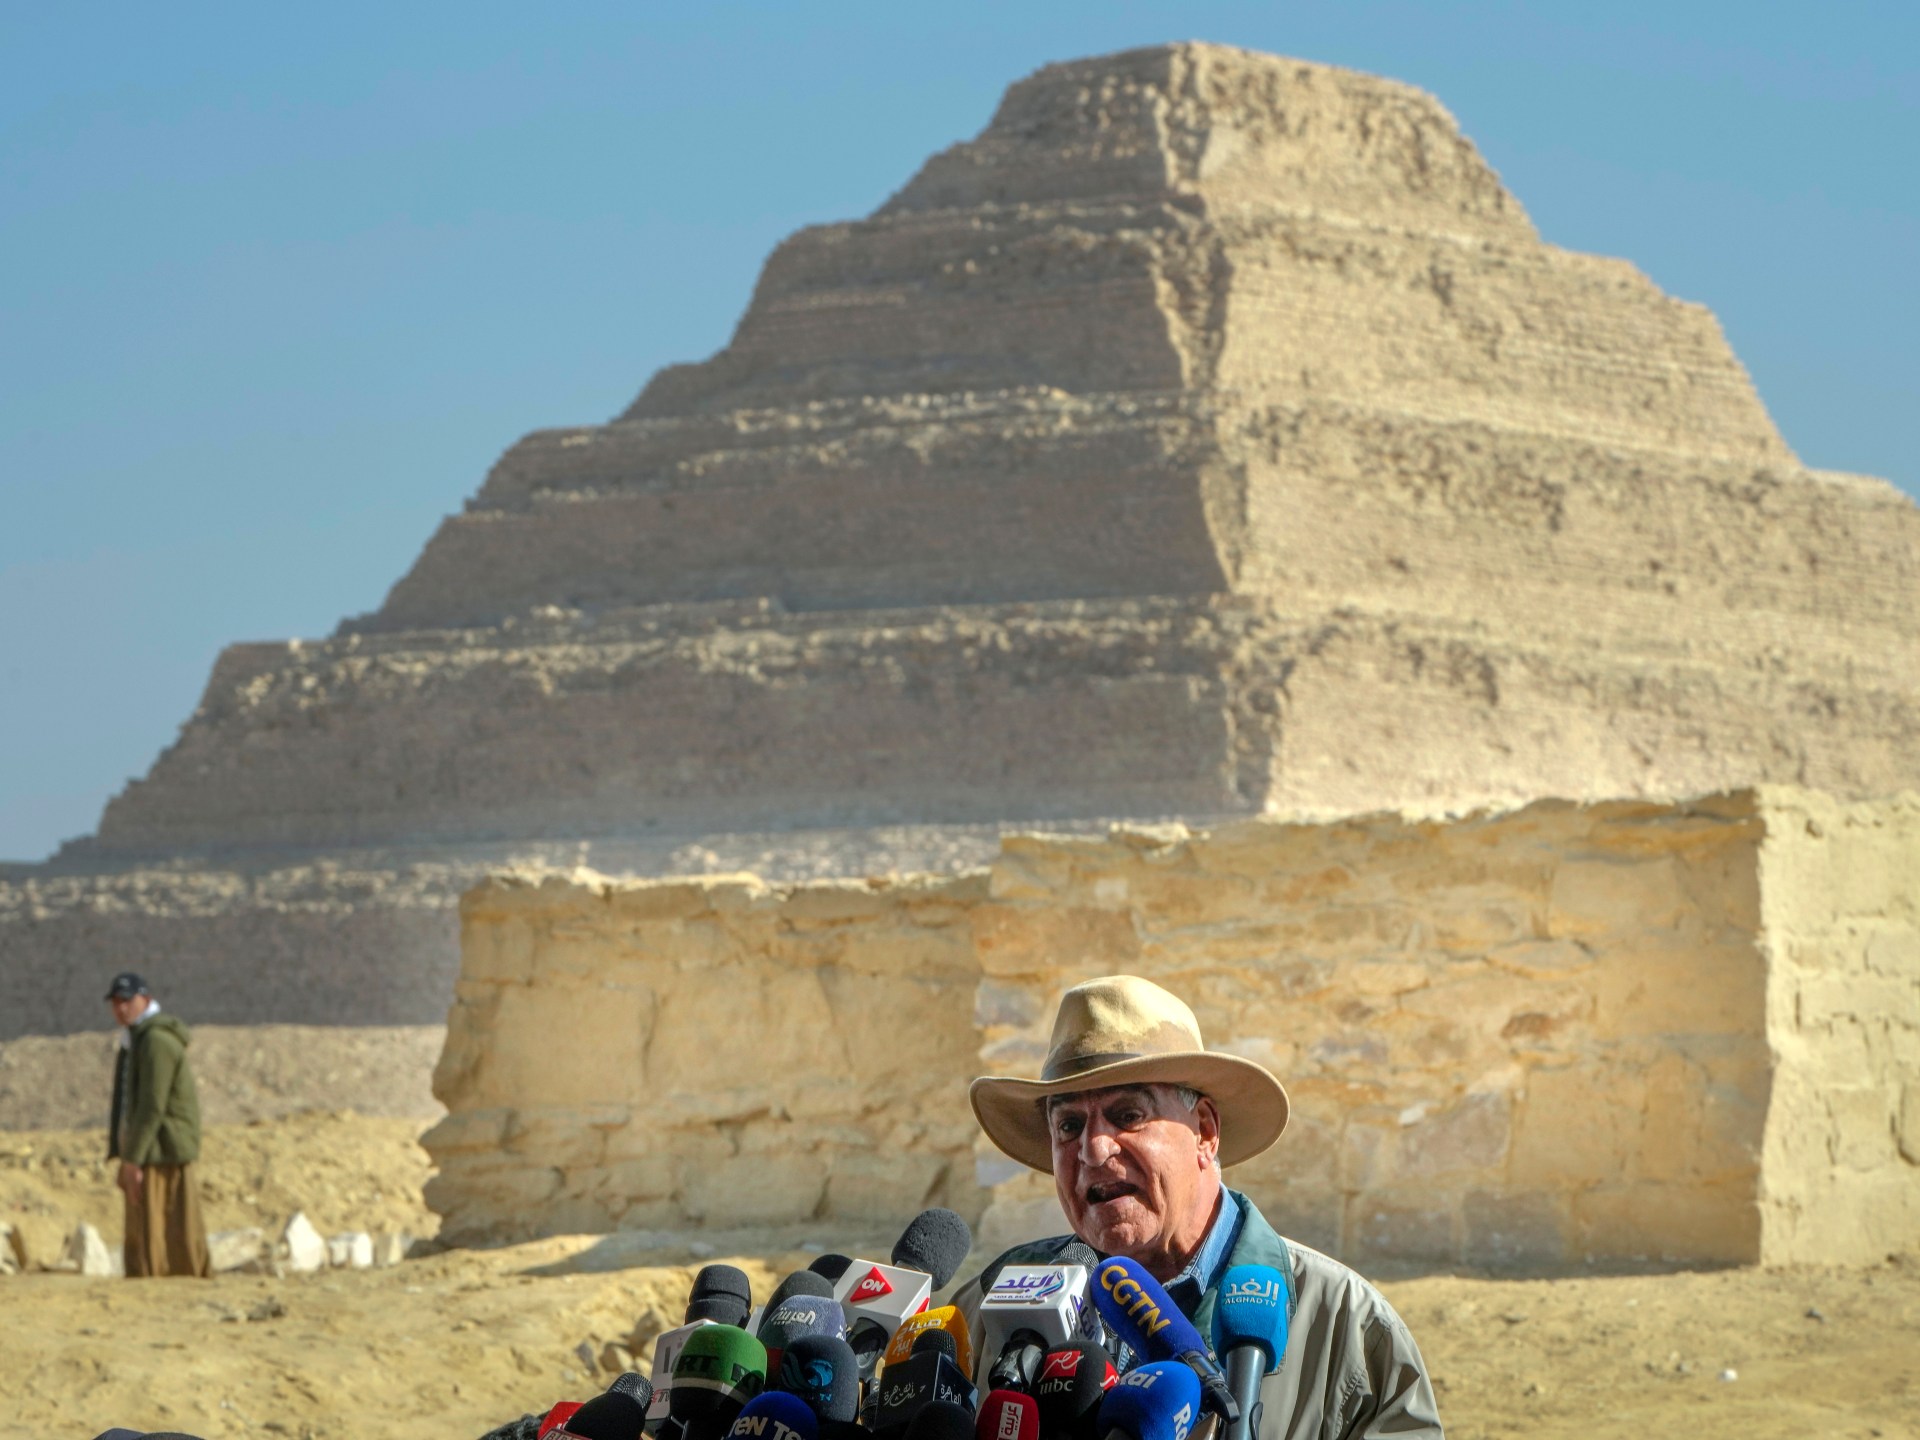 De ‘oudste en meest complete’ mummie gevonden in Egypte |  Nieuws